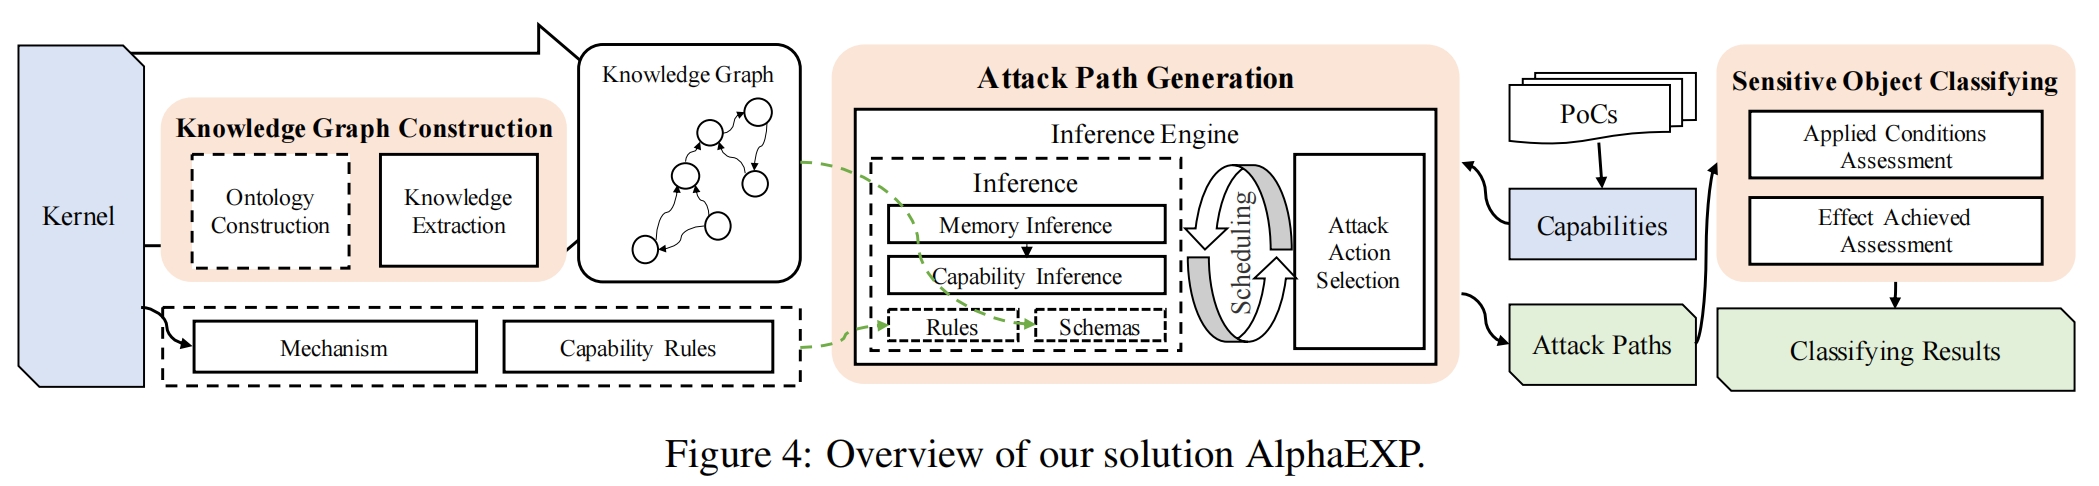 2-AlphaEXP-Overview